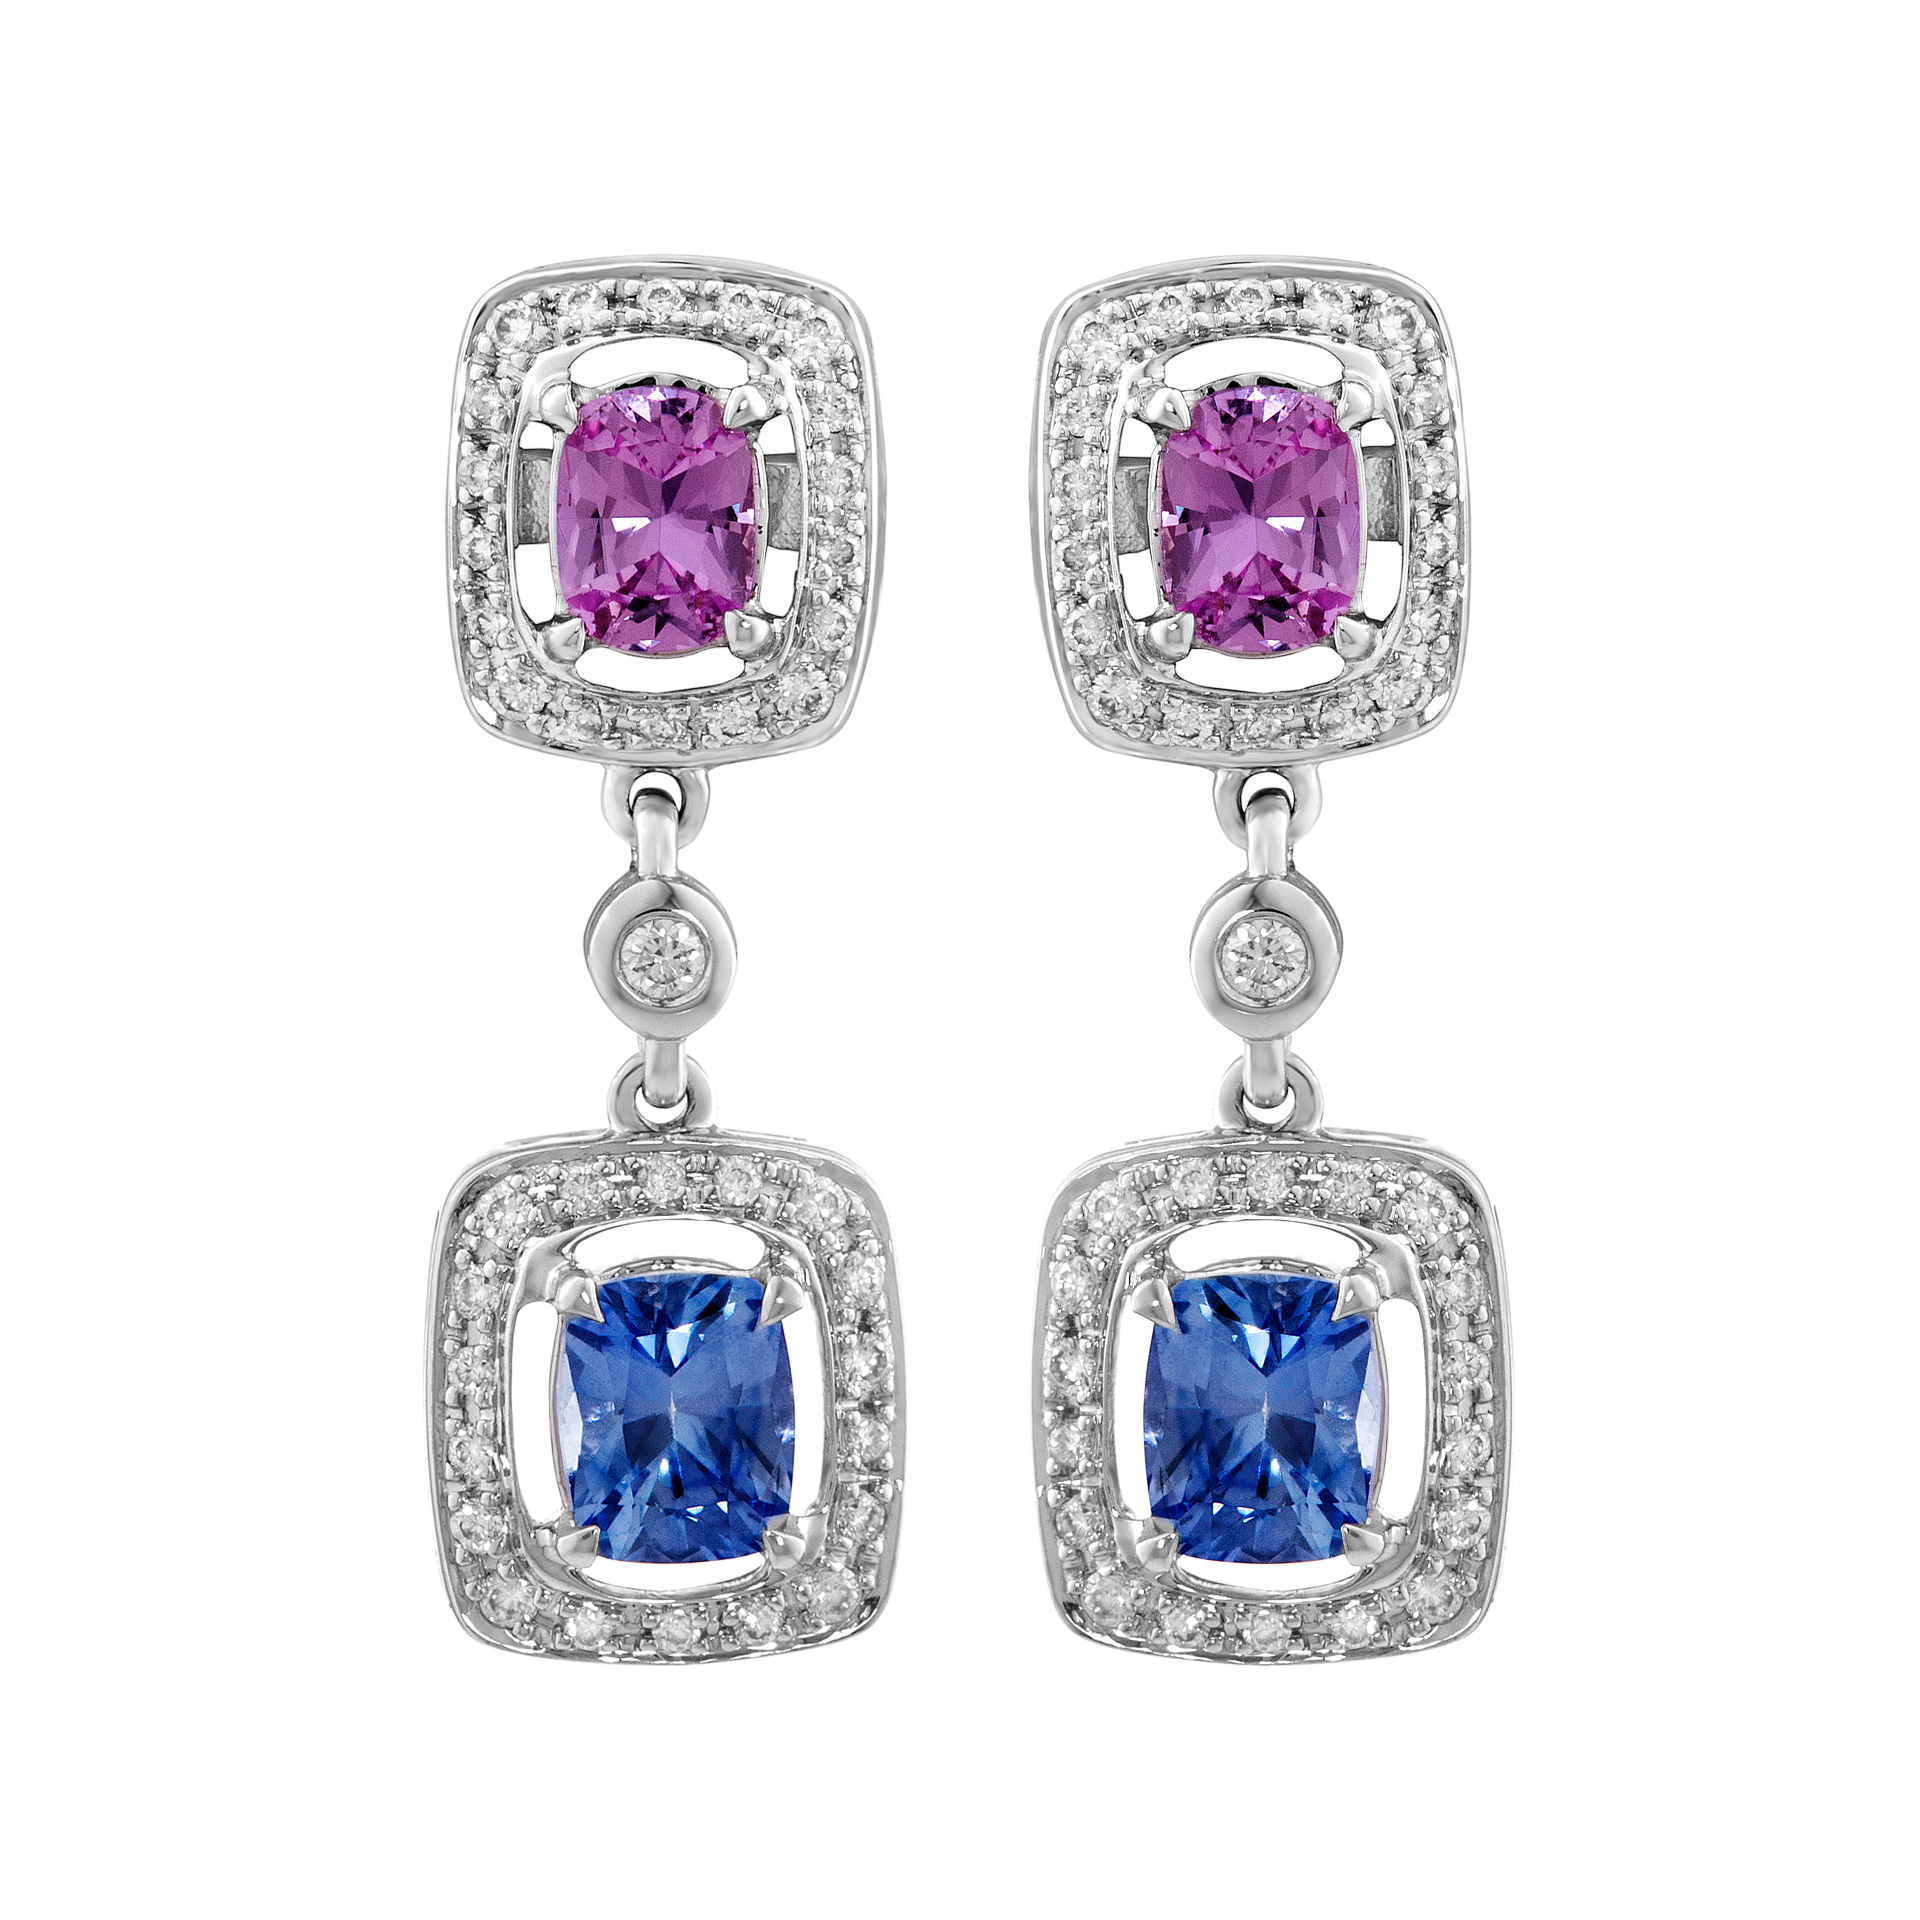 Halo set pink & blue sapphire drop earrings